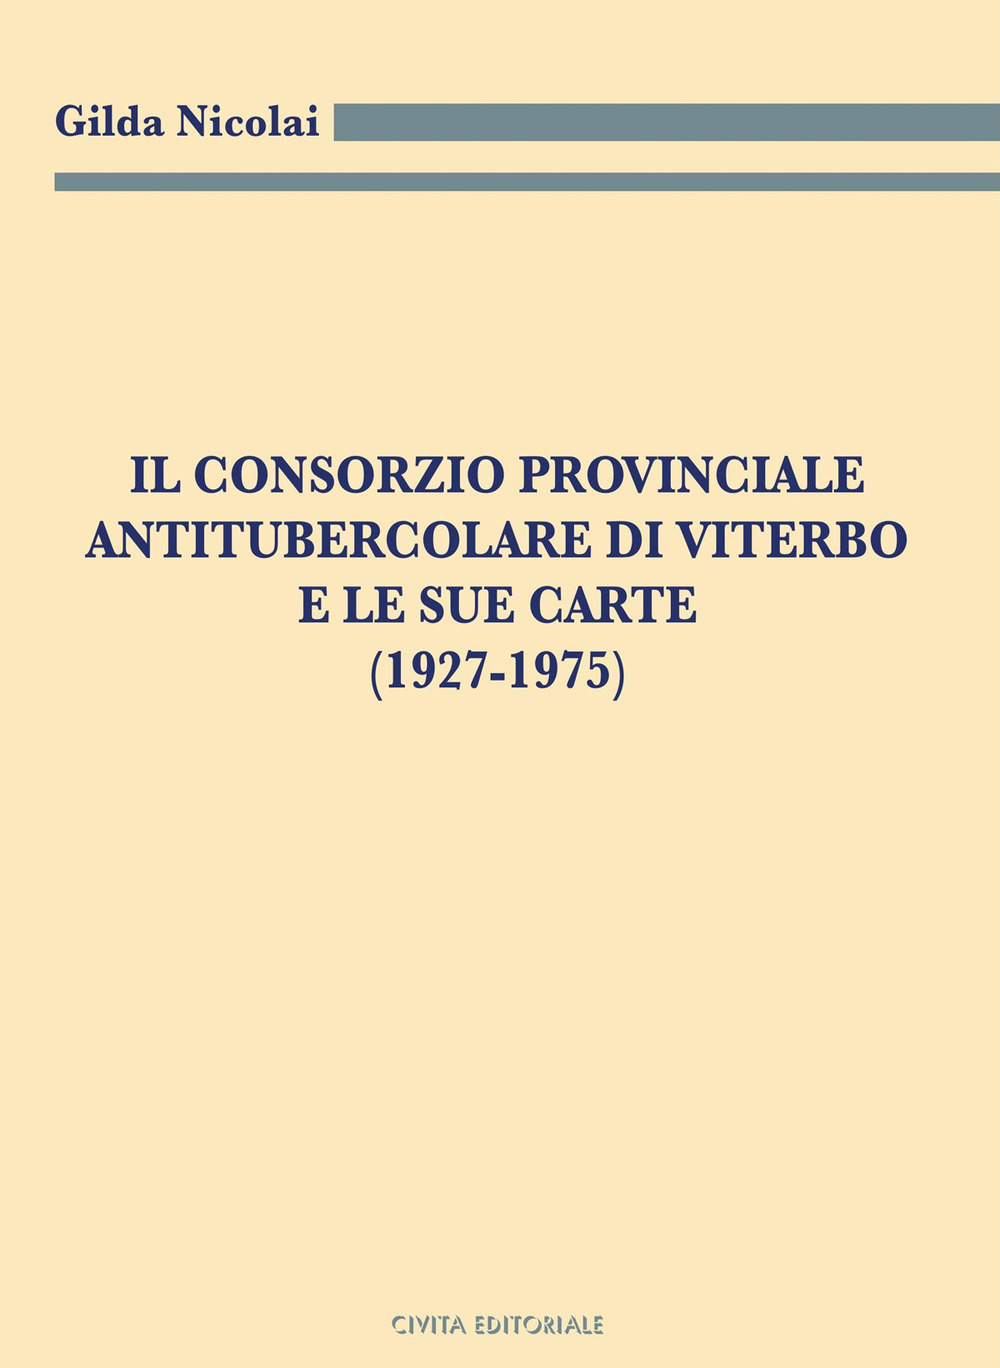 Il Consorzio Provinciale Antitubercolare di Viterbo e le sue carte (1927-1975)